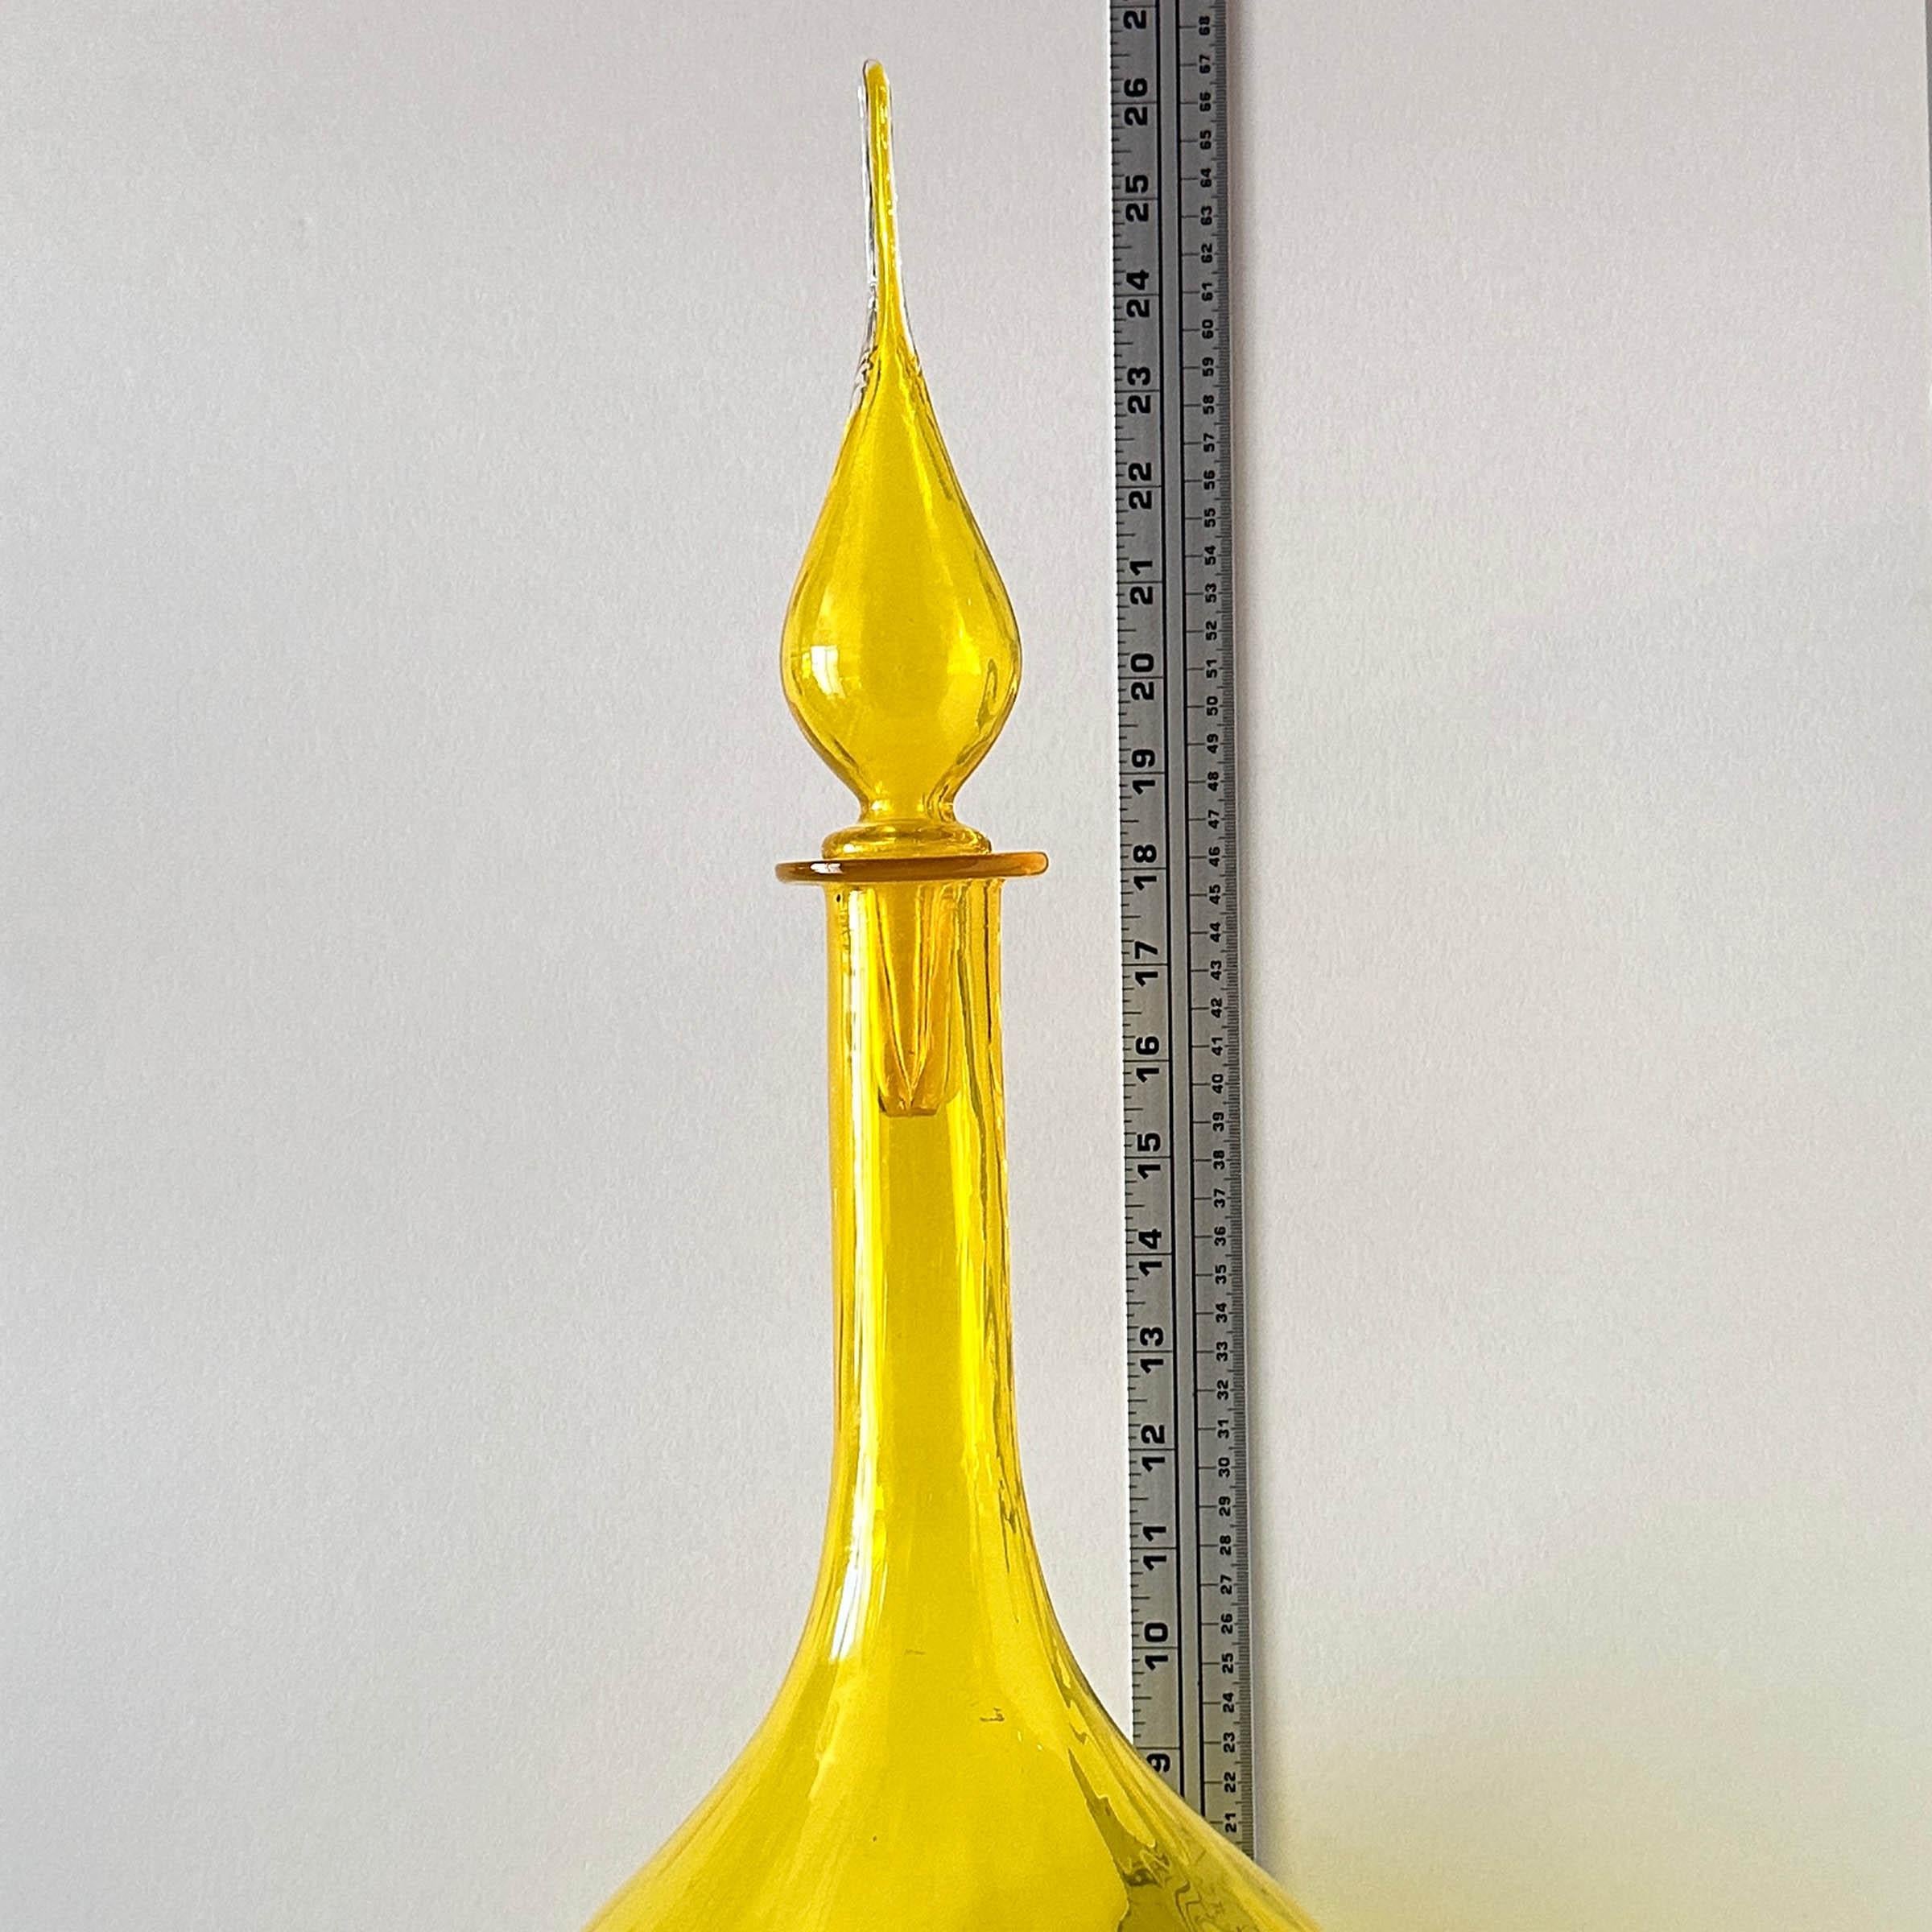 American Blenko Lemon Yellow Optical Art Glass Flame Stopper Decanter For Sale